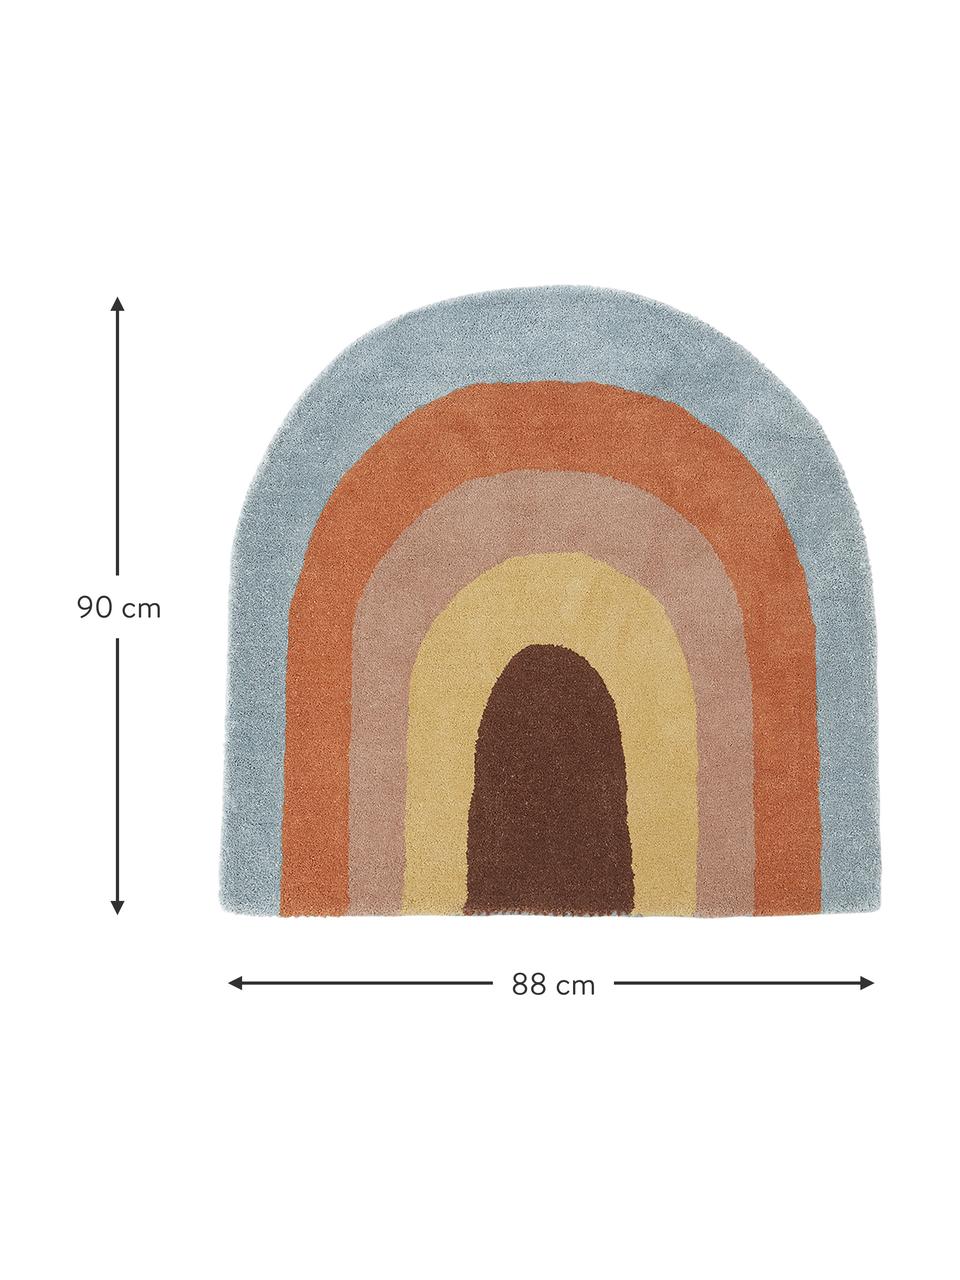 Tapis pour enfant en laine Rainbow, 80 % laine, 20 % coton

Les tapis en laine peuvent perdre des fibres lors des premières semaines et des peluches peuvent se former, ce phénomène est naturel et diminue à mesure de votre usage et du temps, Multicolore, larg. 88 x long. 90 cm